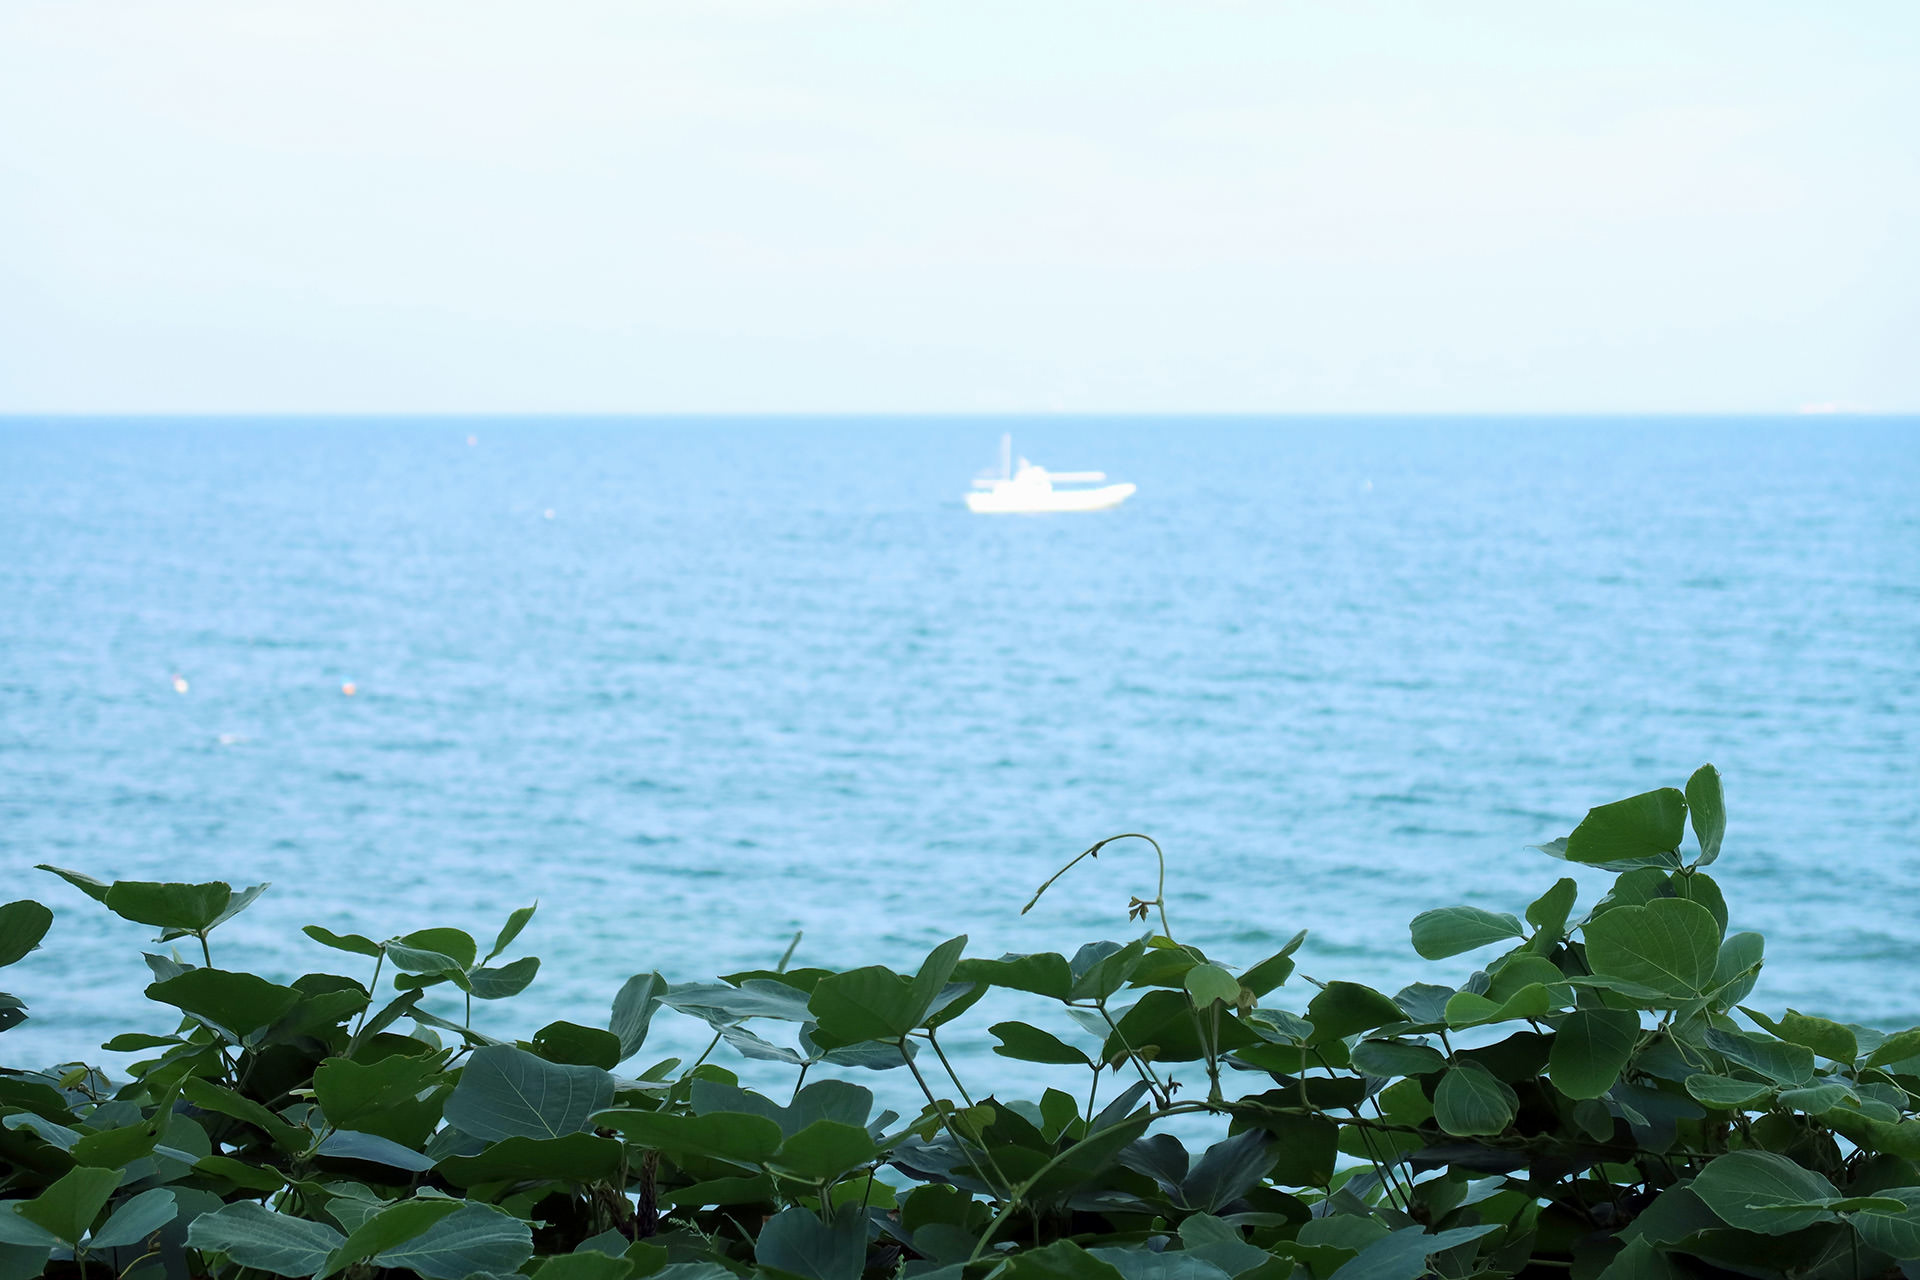 青い海に、1隻の白い漁船が見える風景。手前には、つる植物の葉が茂っている。